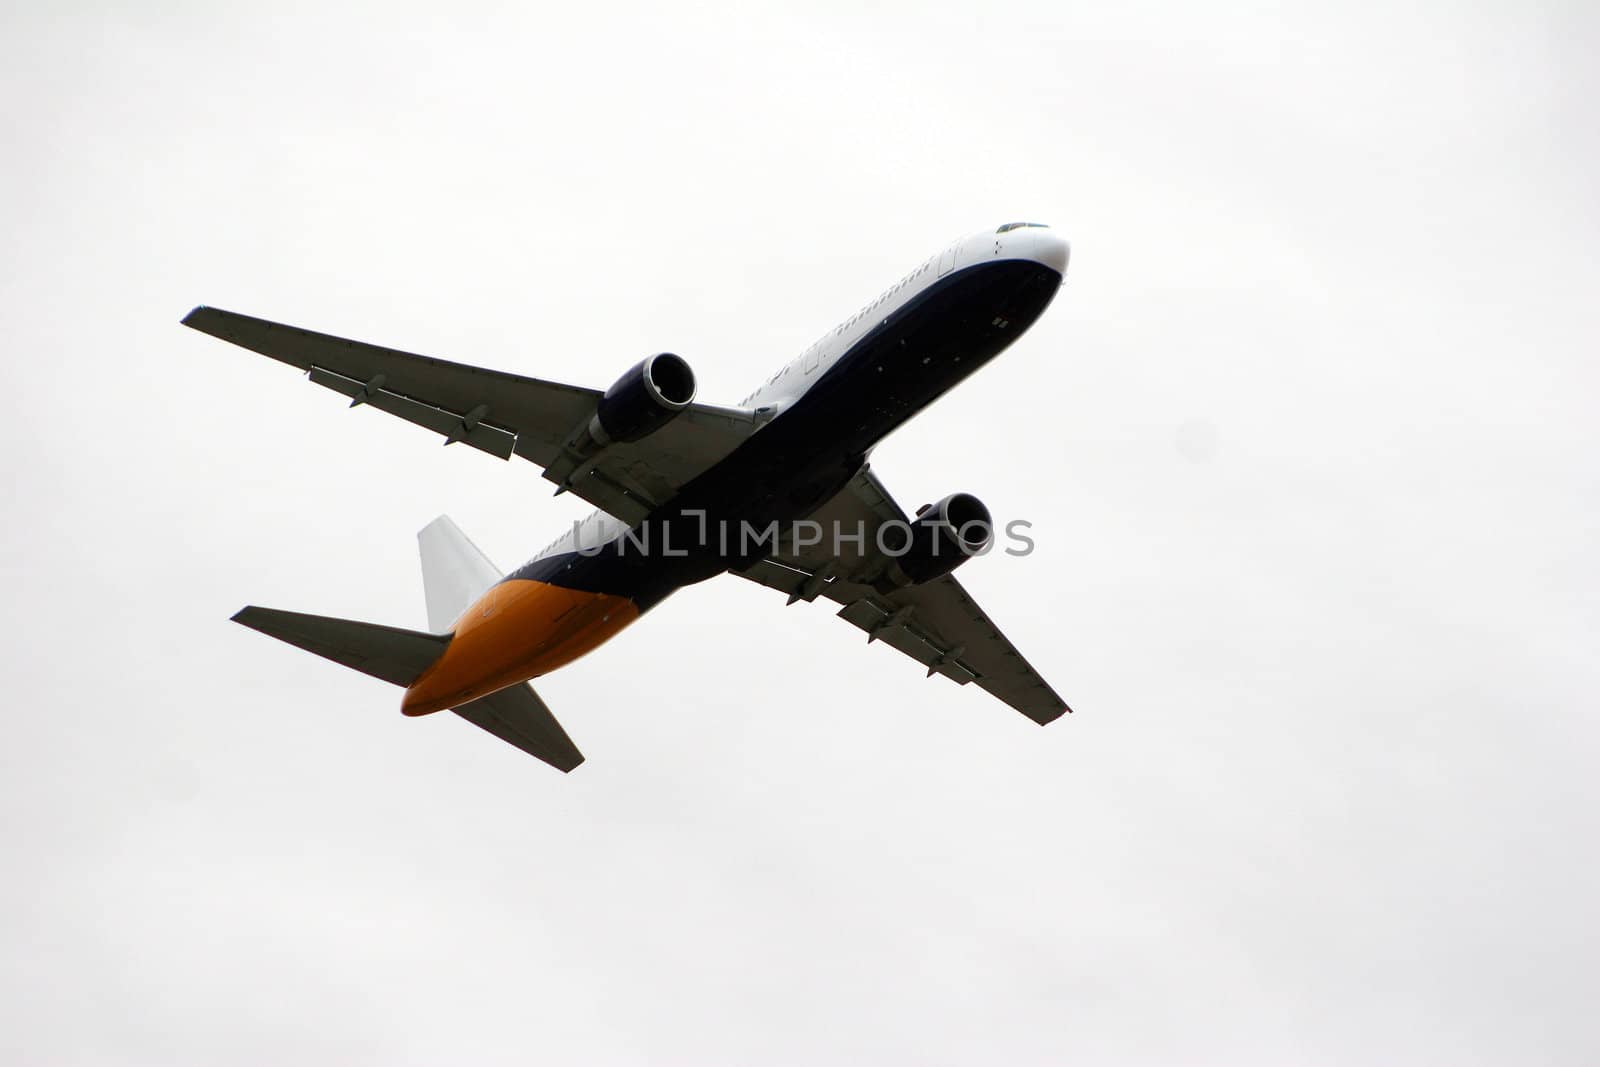 In flight by Imagecom